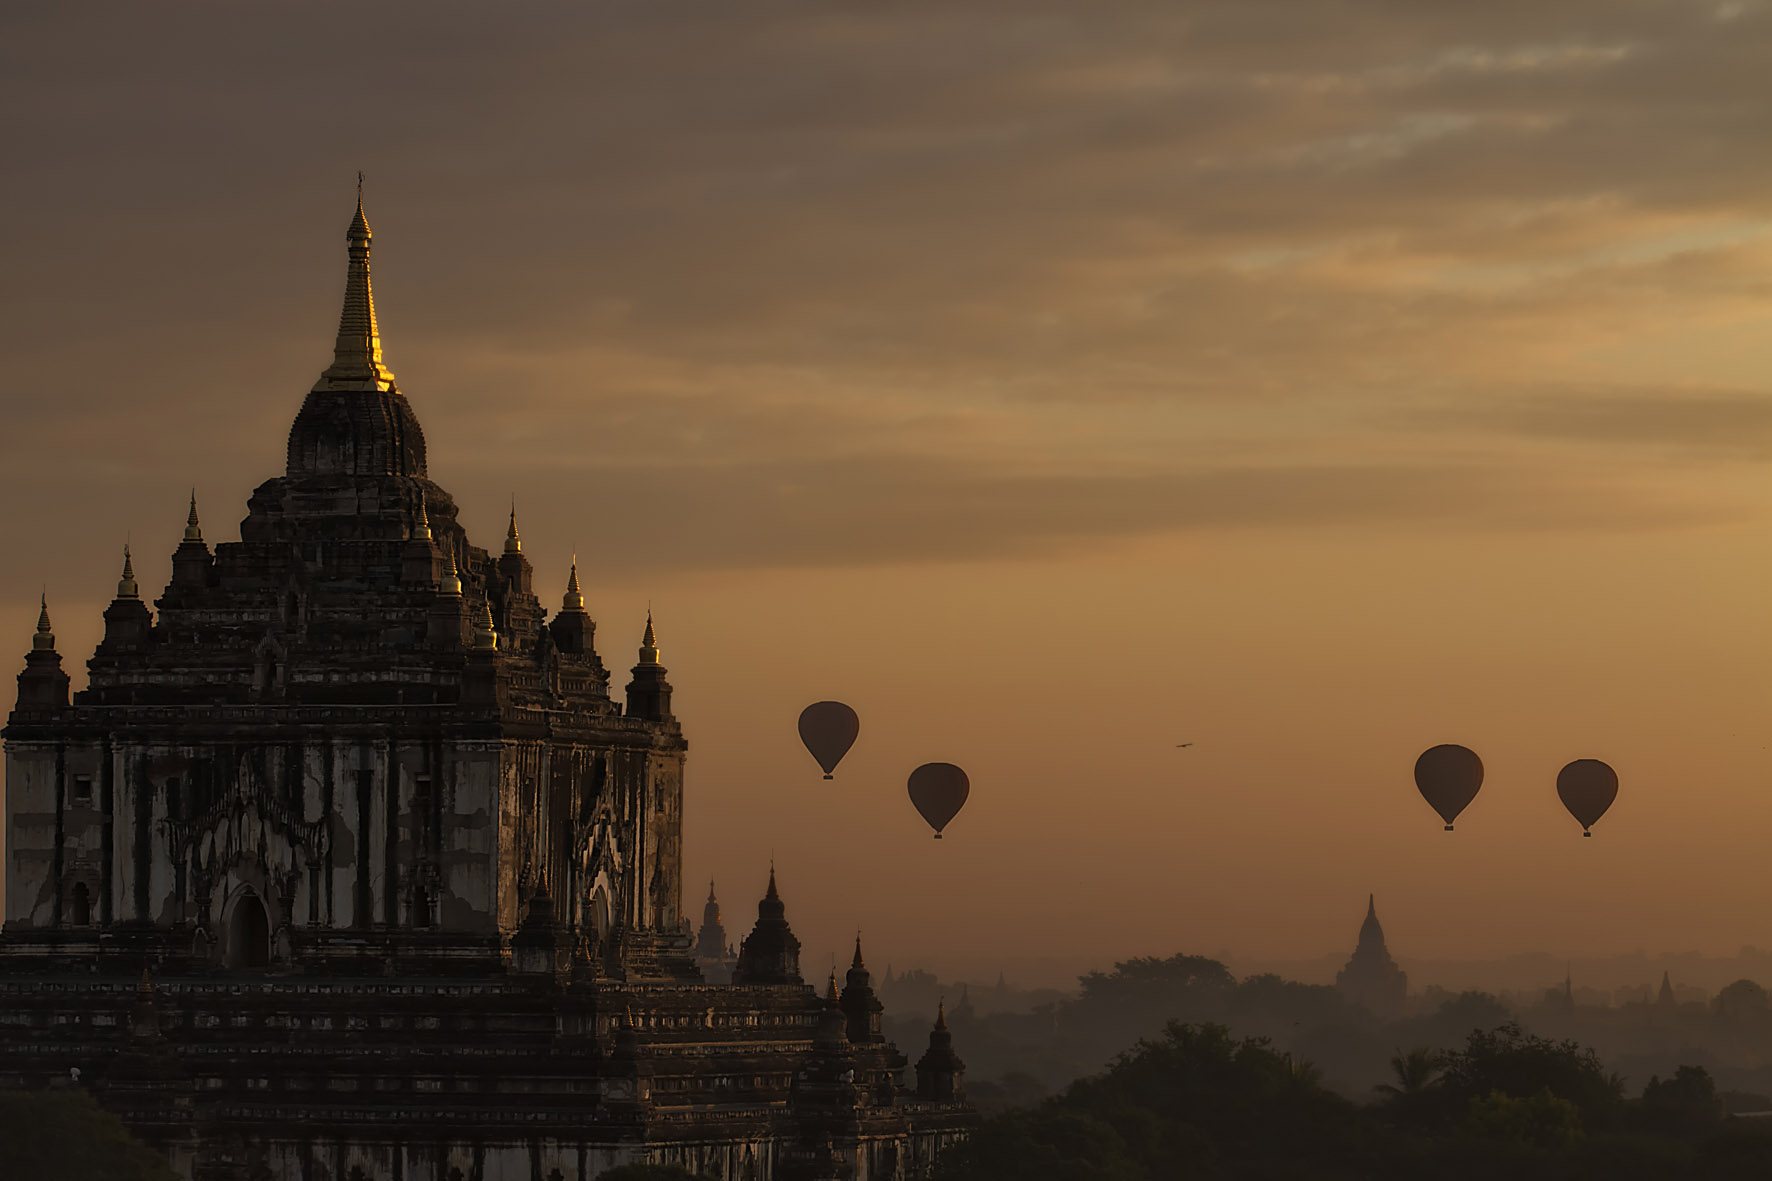 Ballooning over Bagan, Myanmar